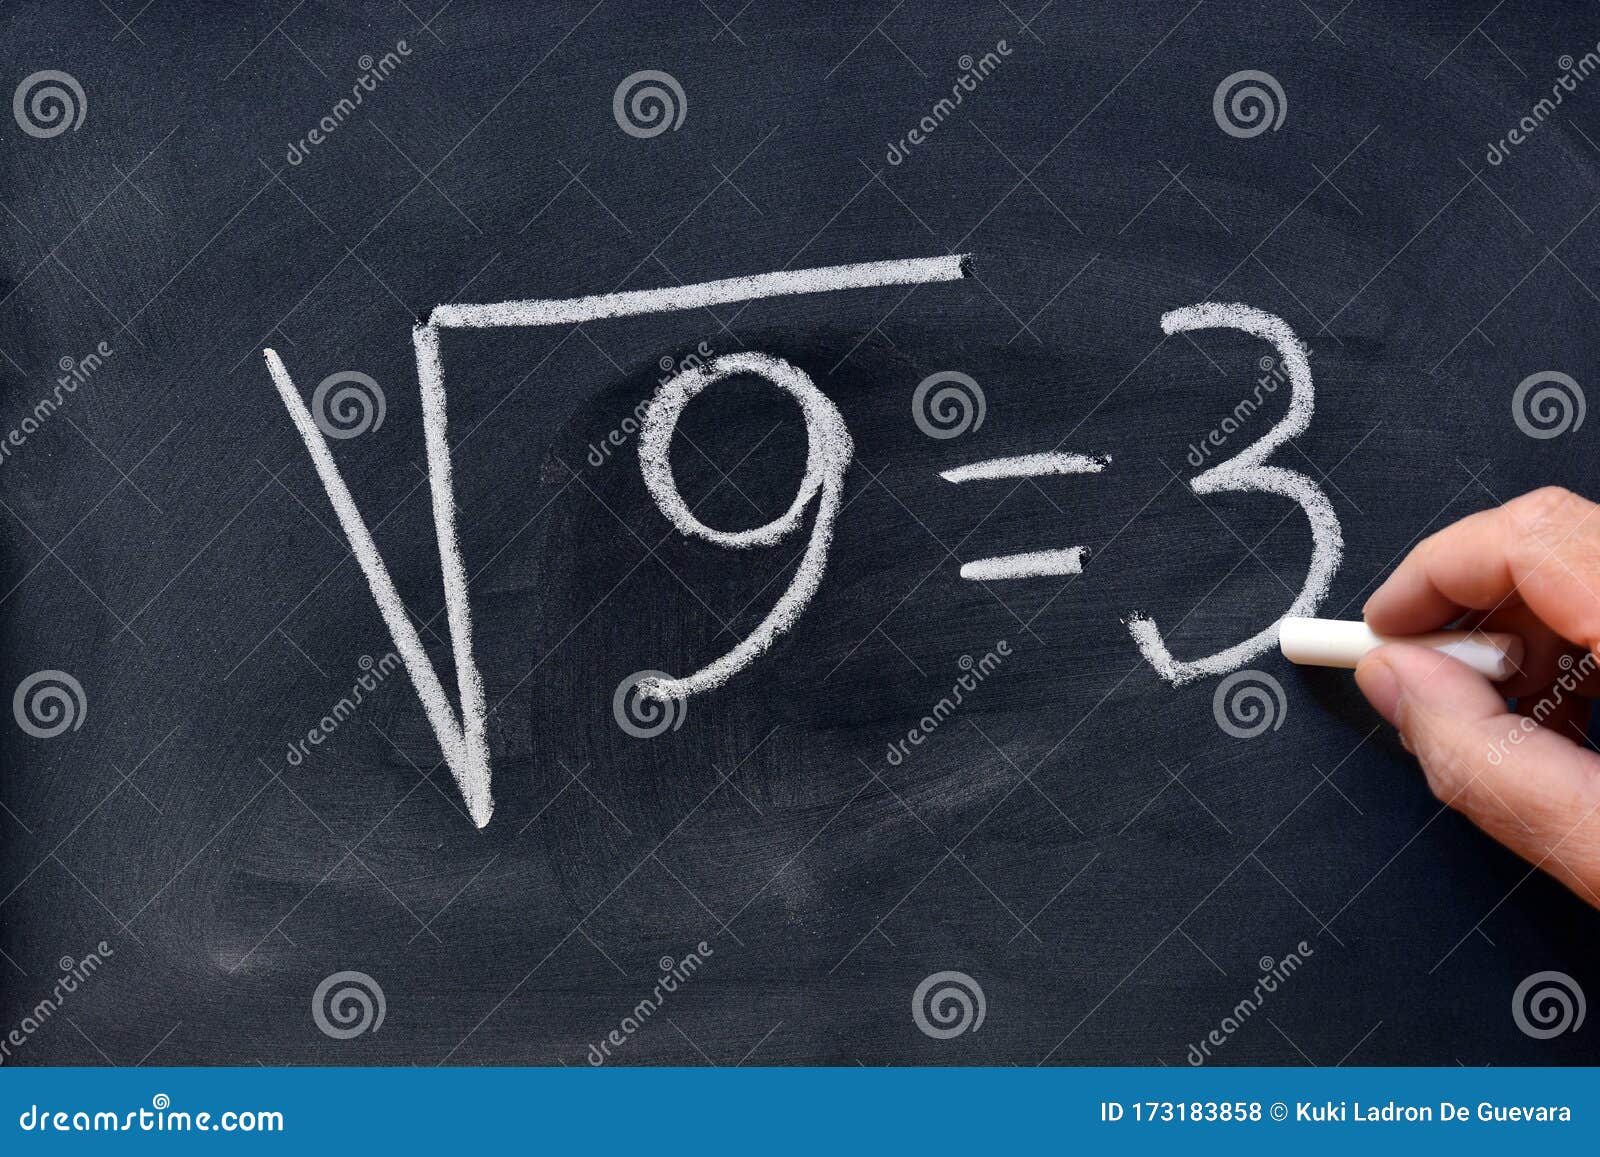 square root written on a blackboard